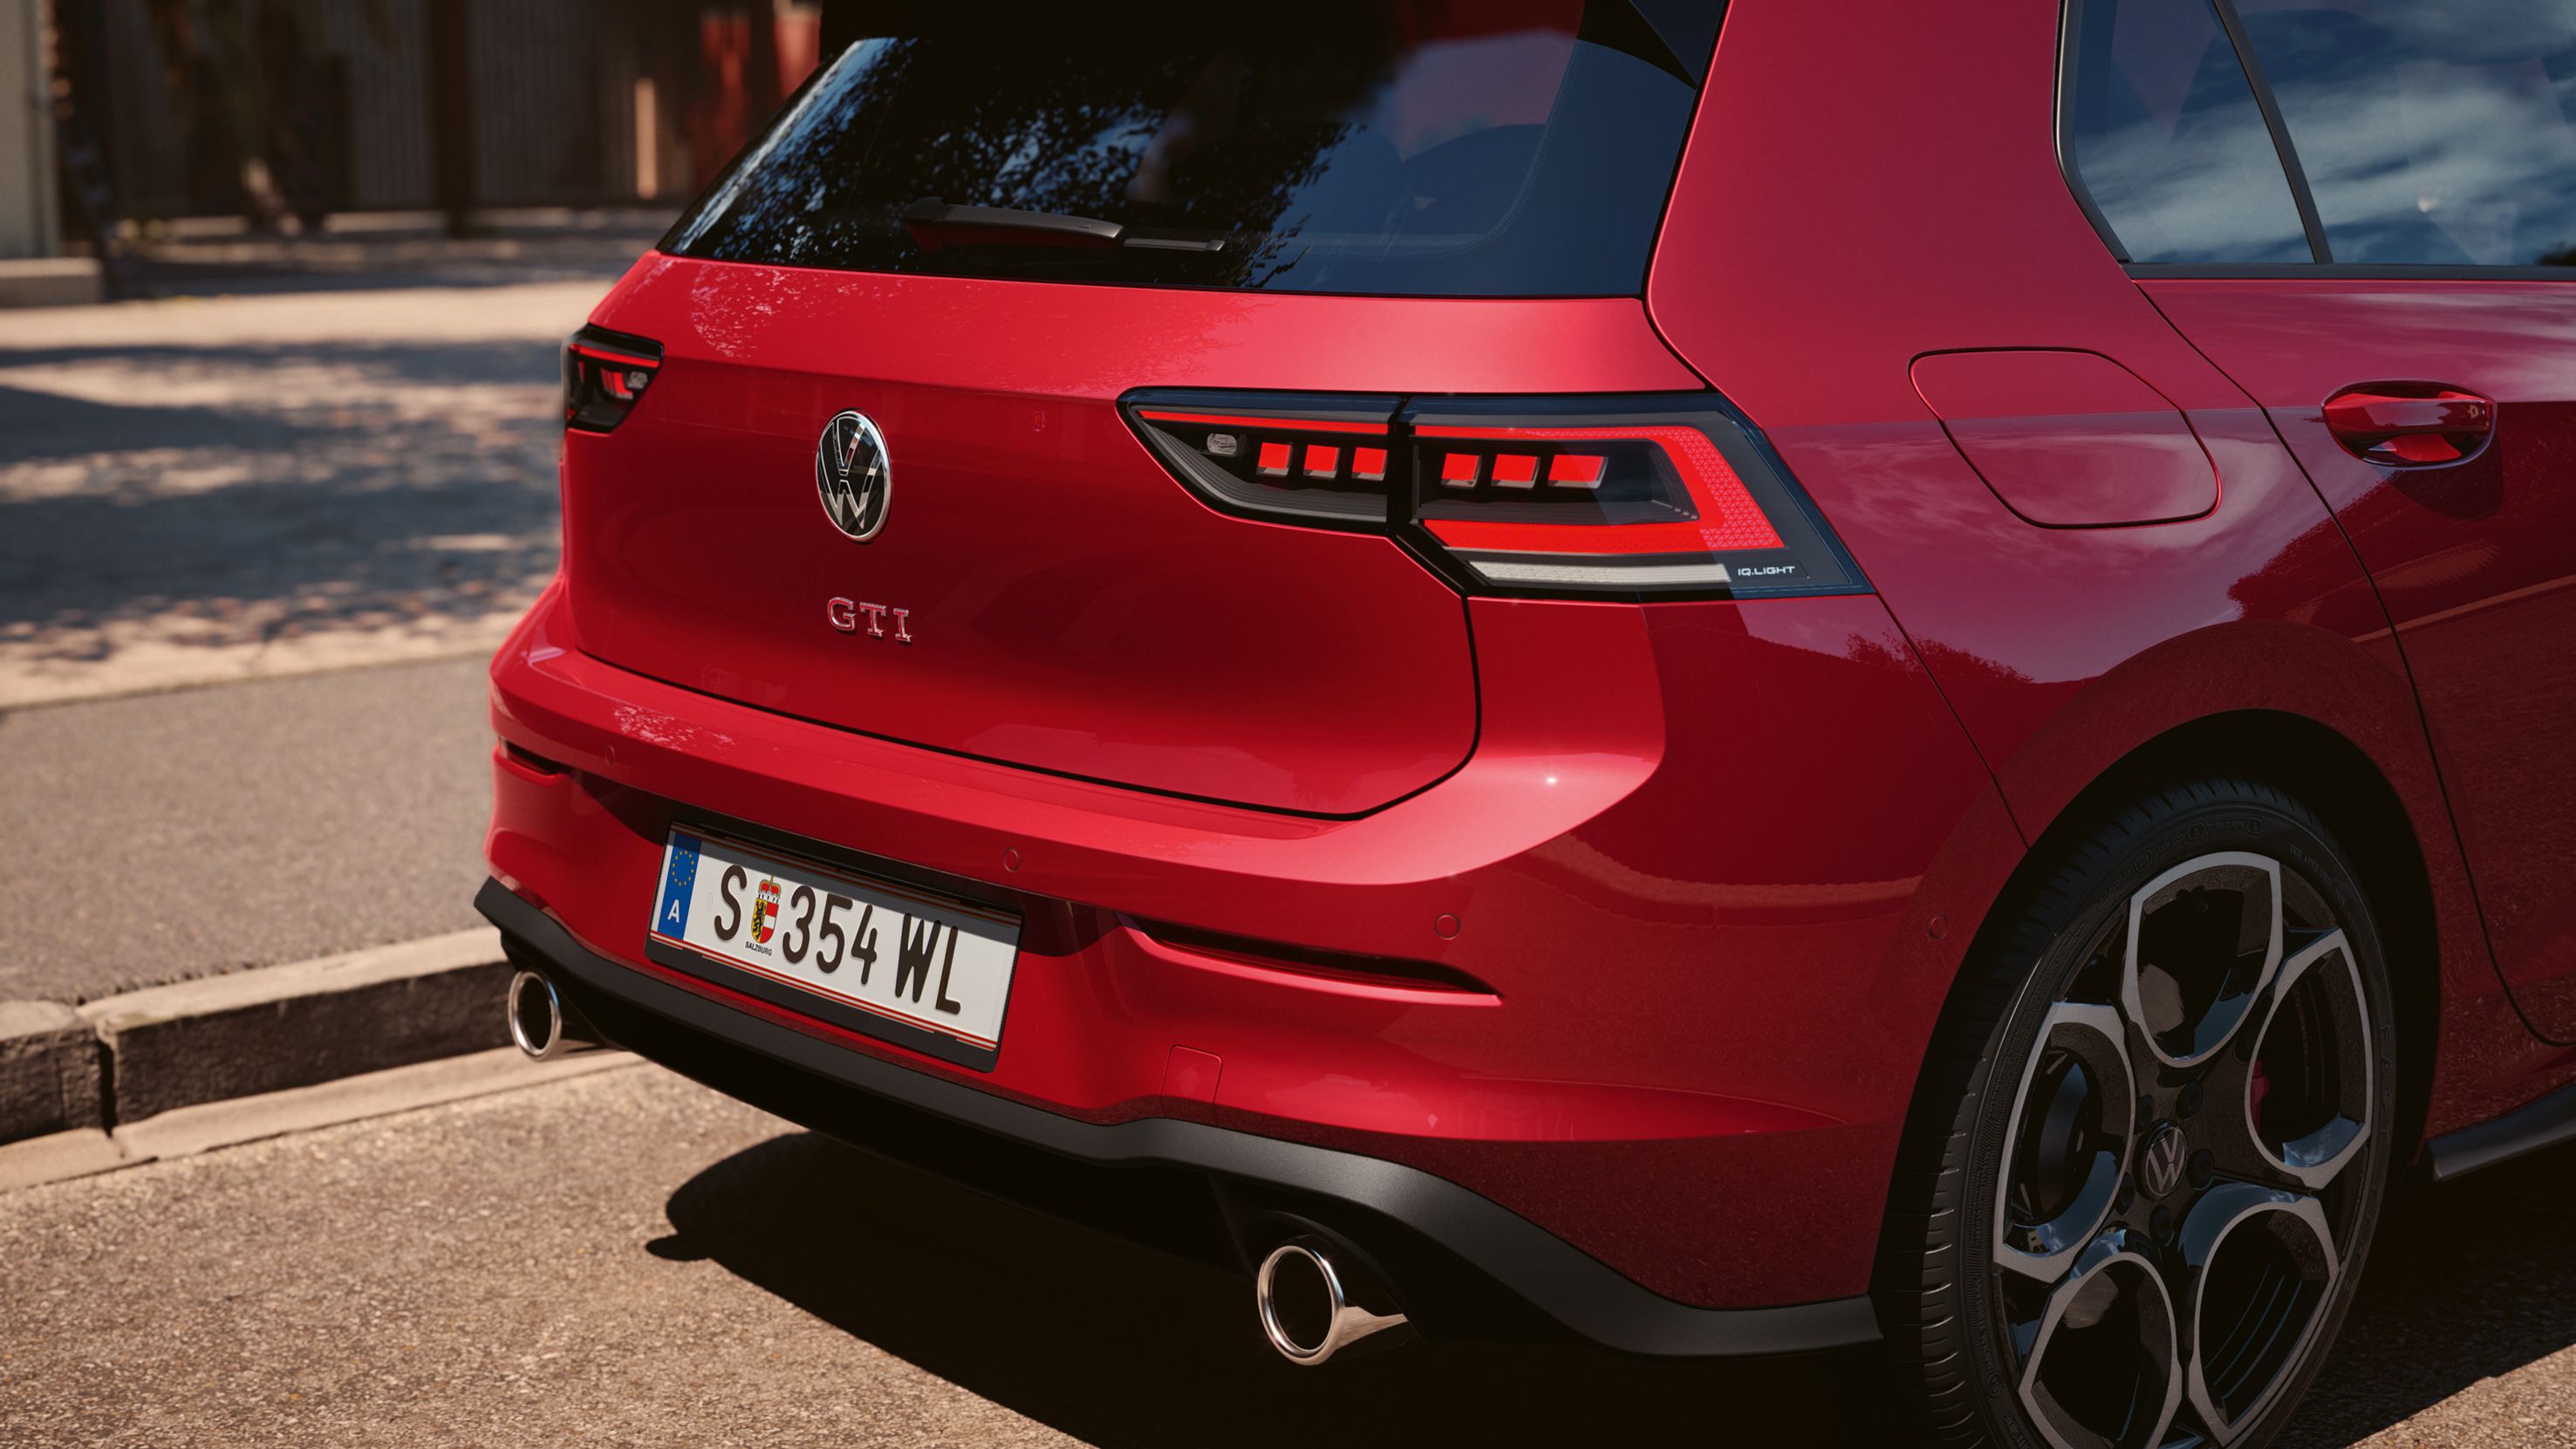 Detailansicht des Hecks eines VW Golf GTI, Fokus auf die IQ.LIGHT LED-Rückleuchten, Logo und Auspuffrohre